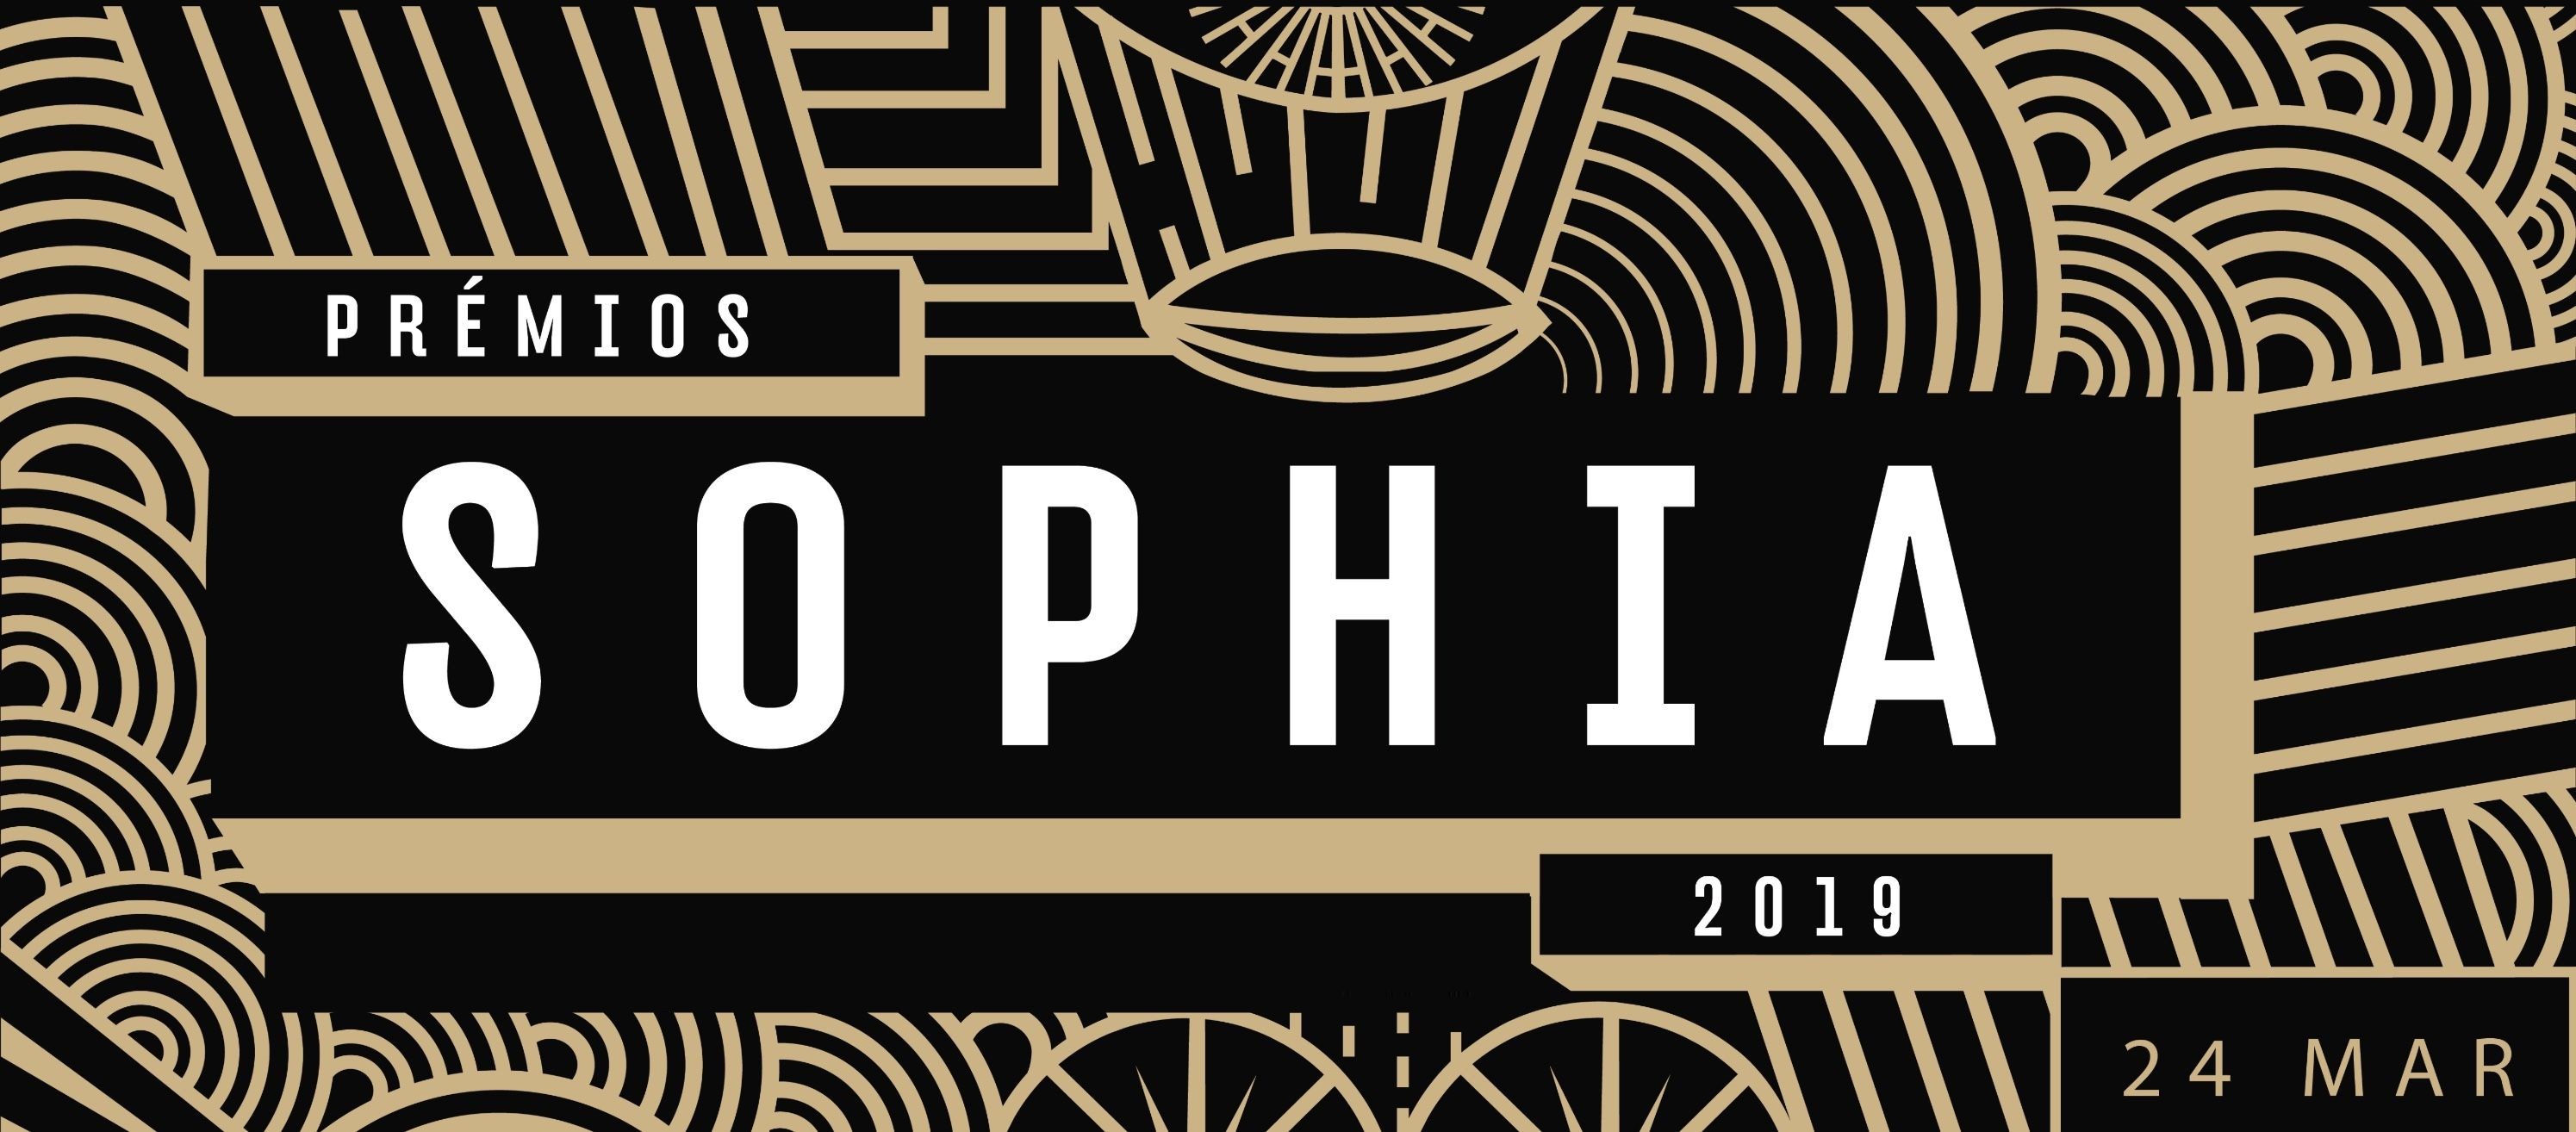 Premios sophia 2019